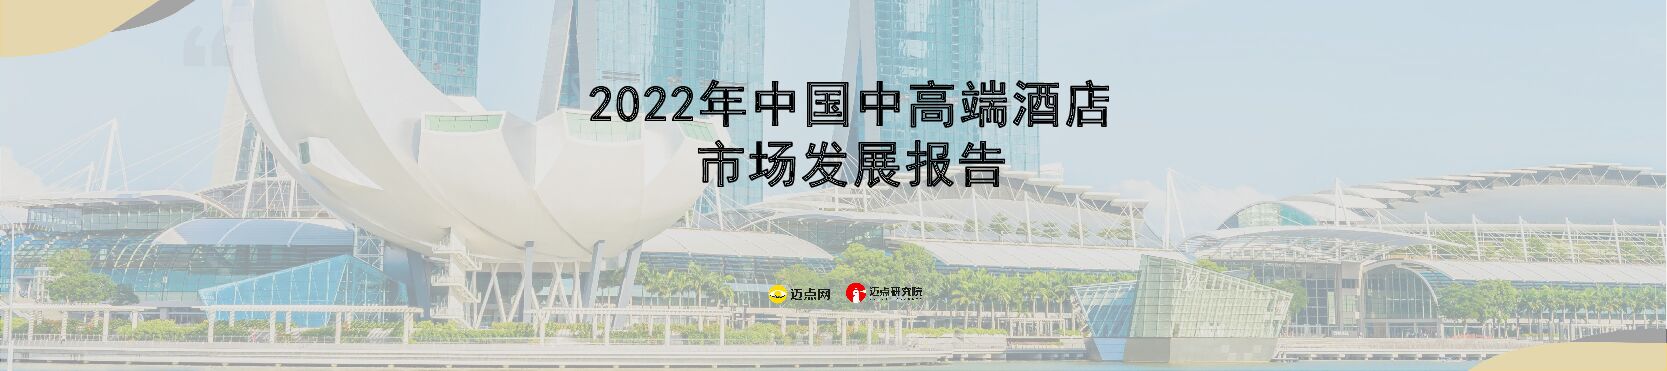 2022年中国中高端酒店市场发展报告-迈点研究院